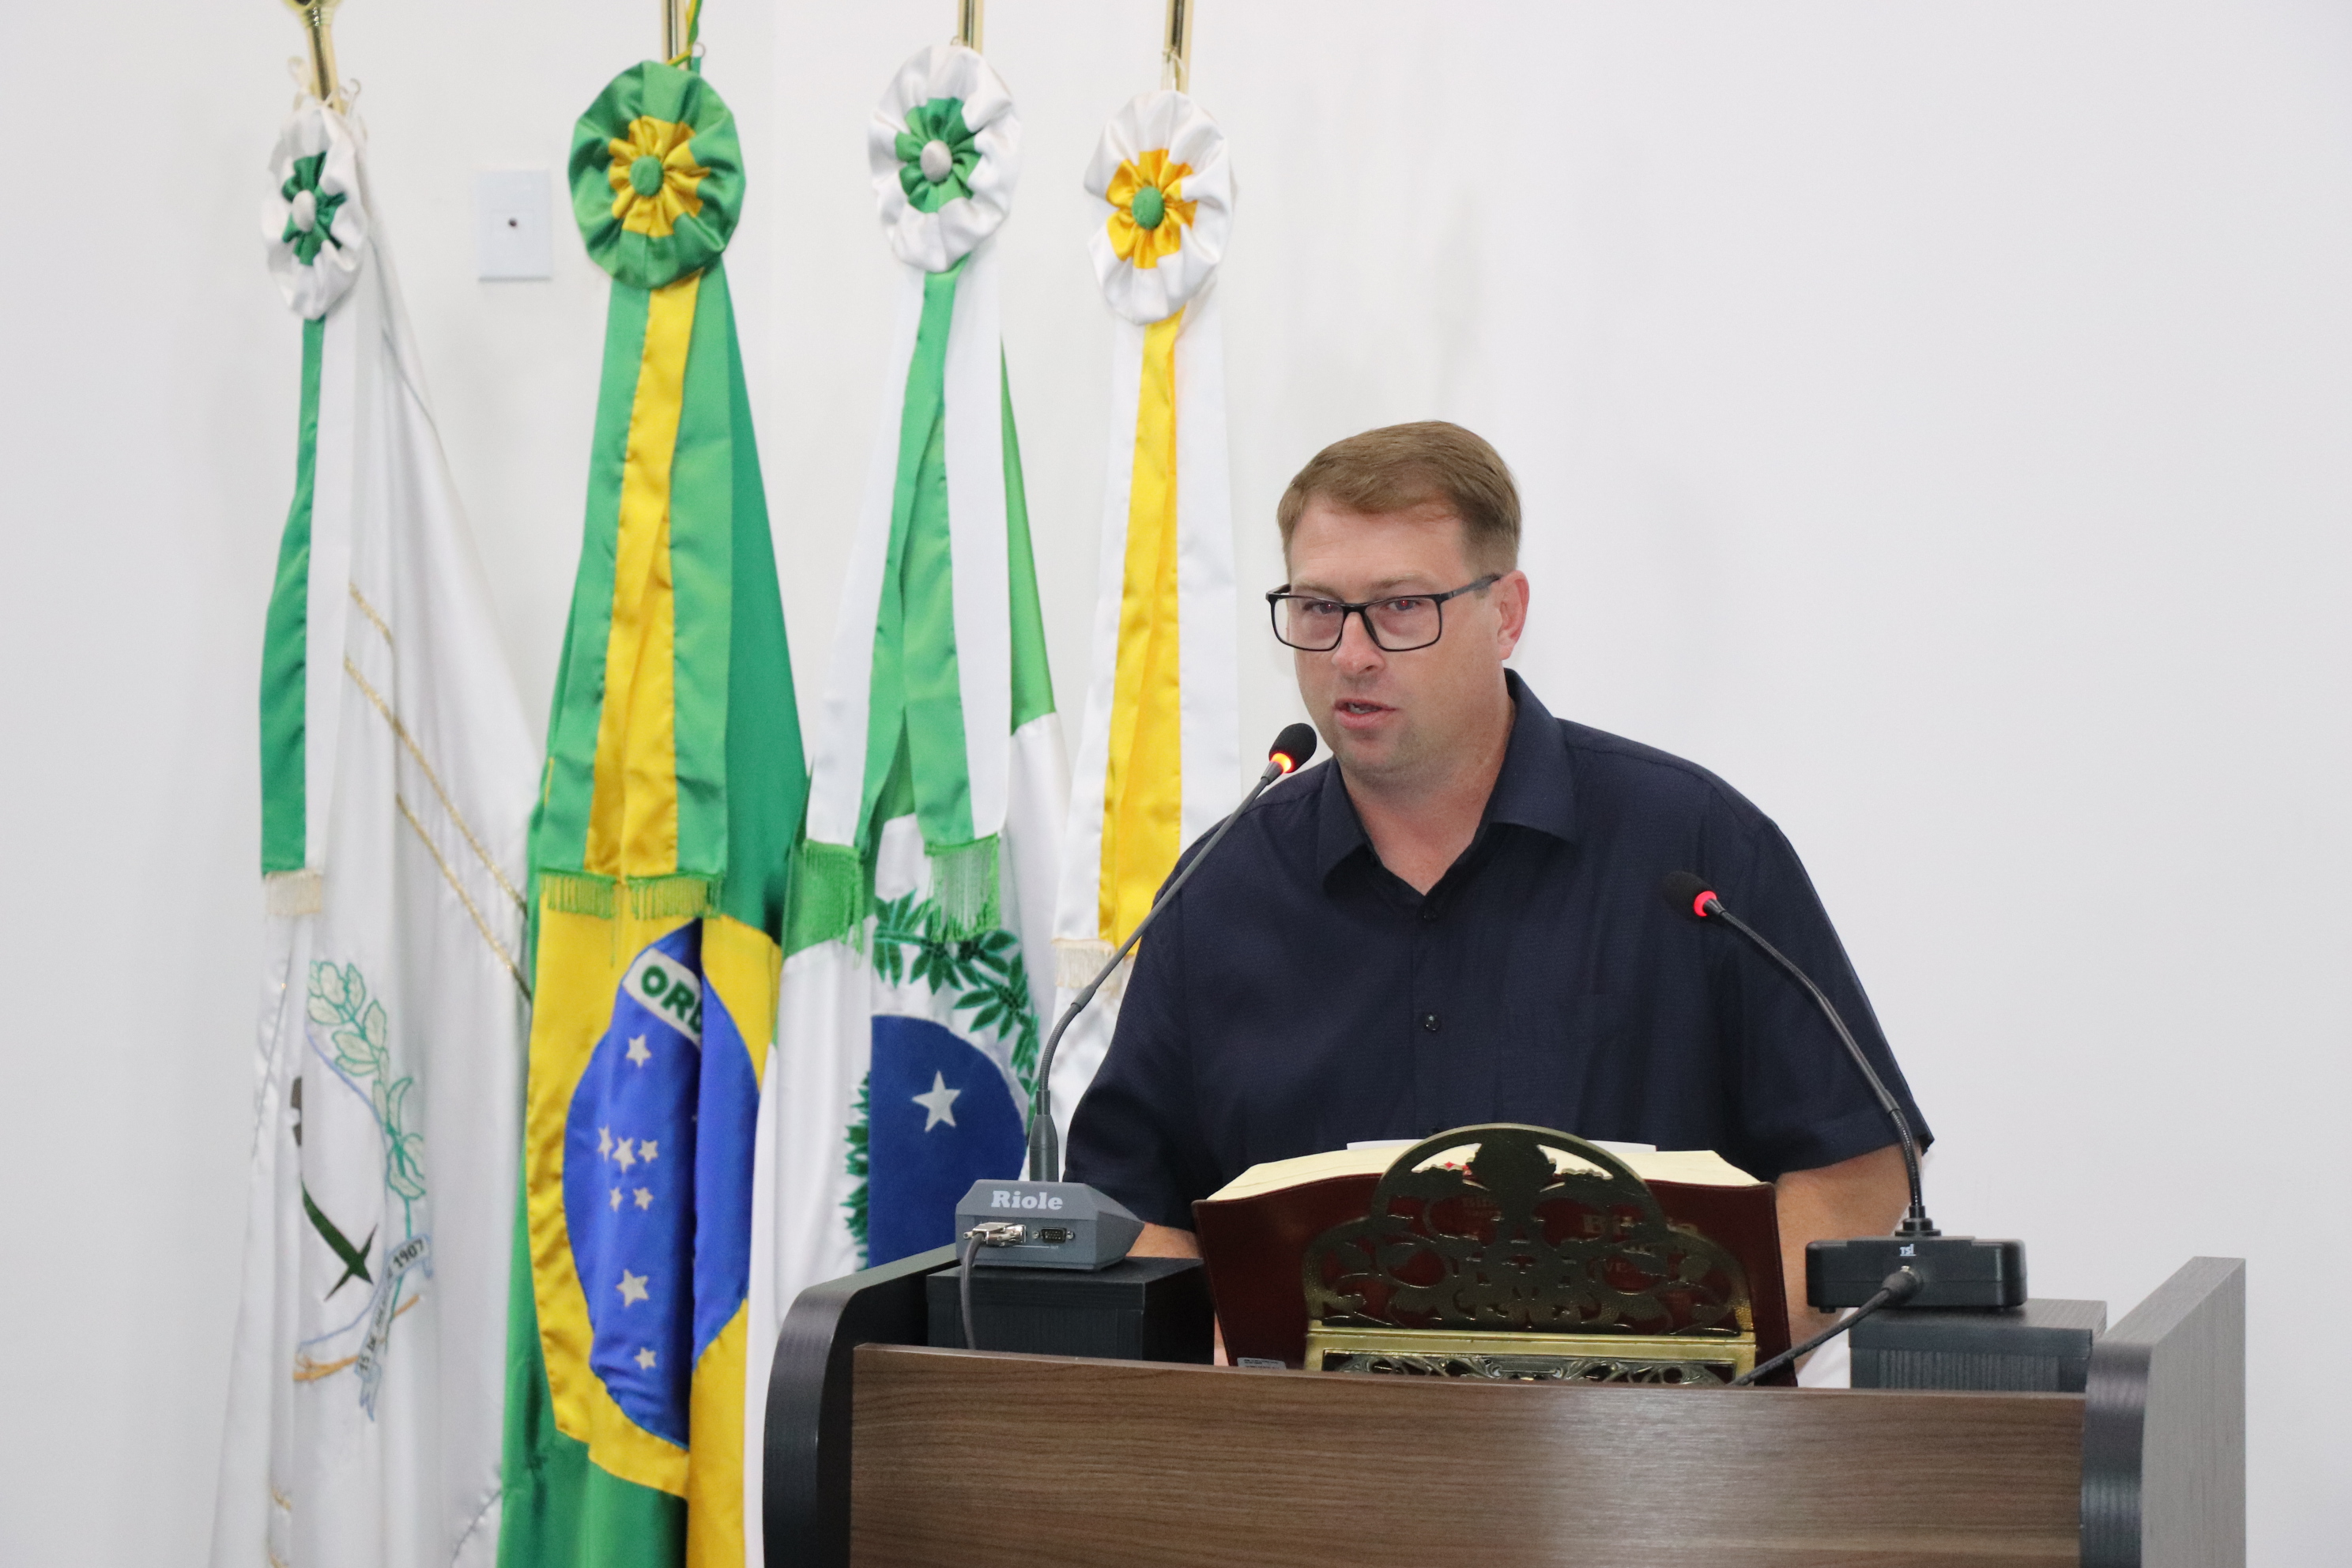 Tribuna Popular - Secretário de Esportes explana sobre projetos e ações da pasta